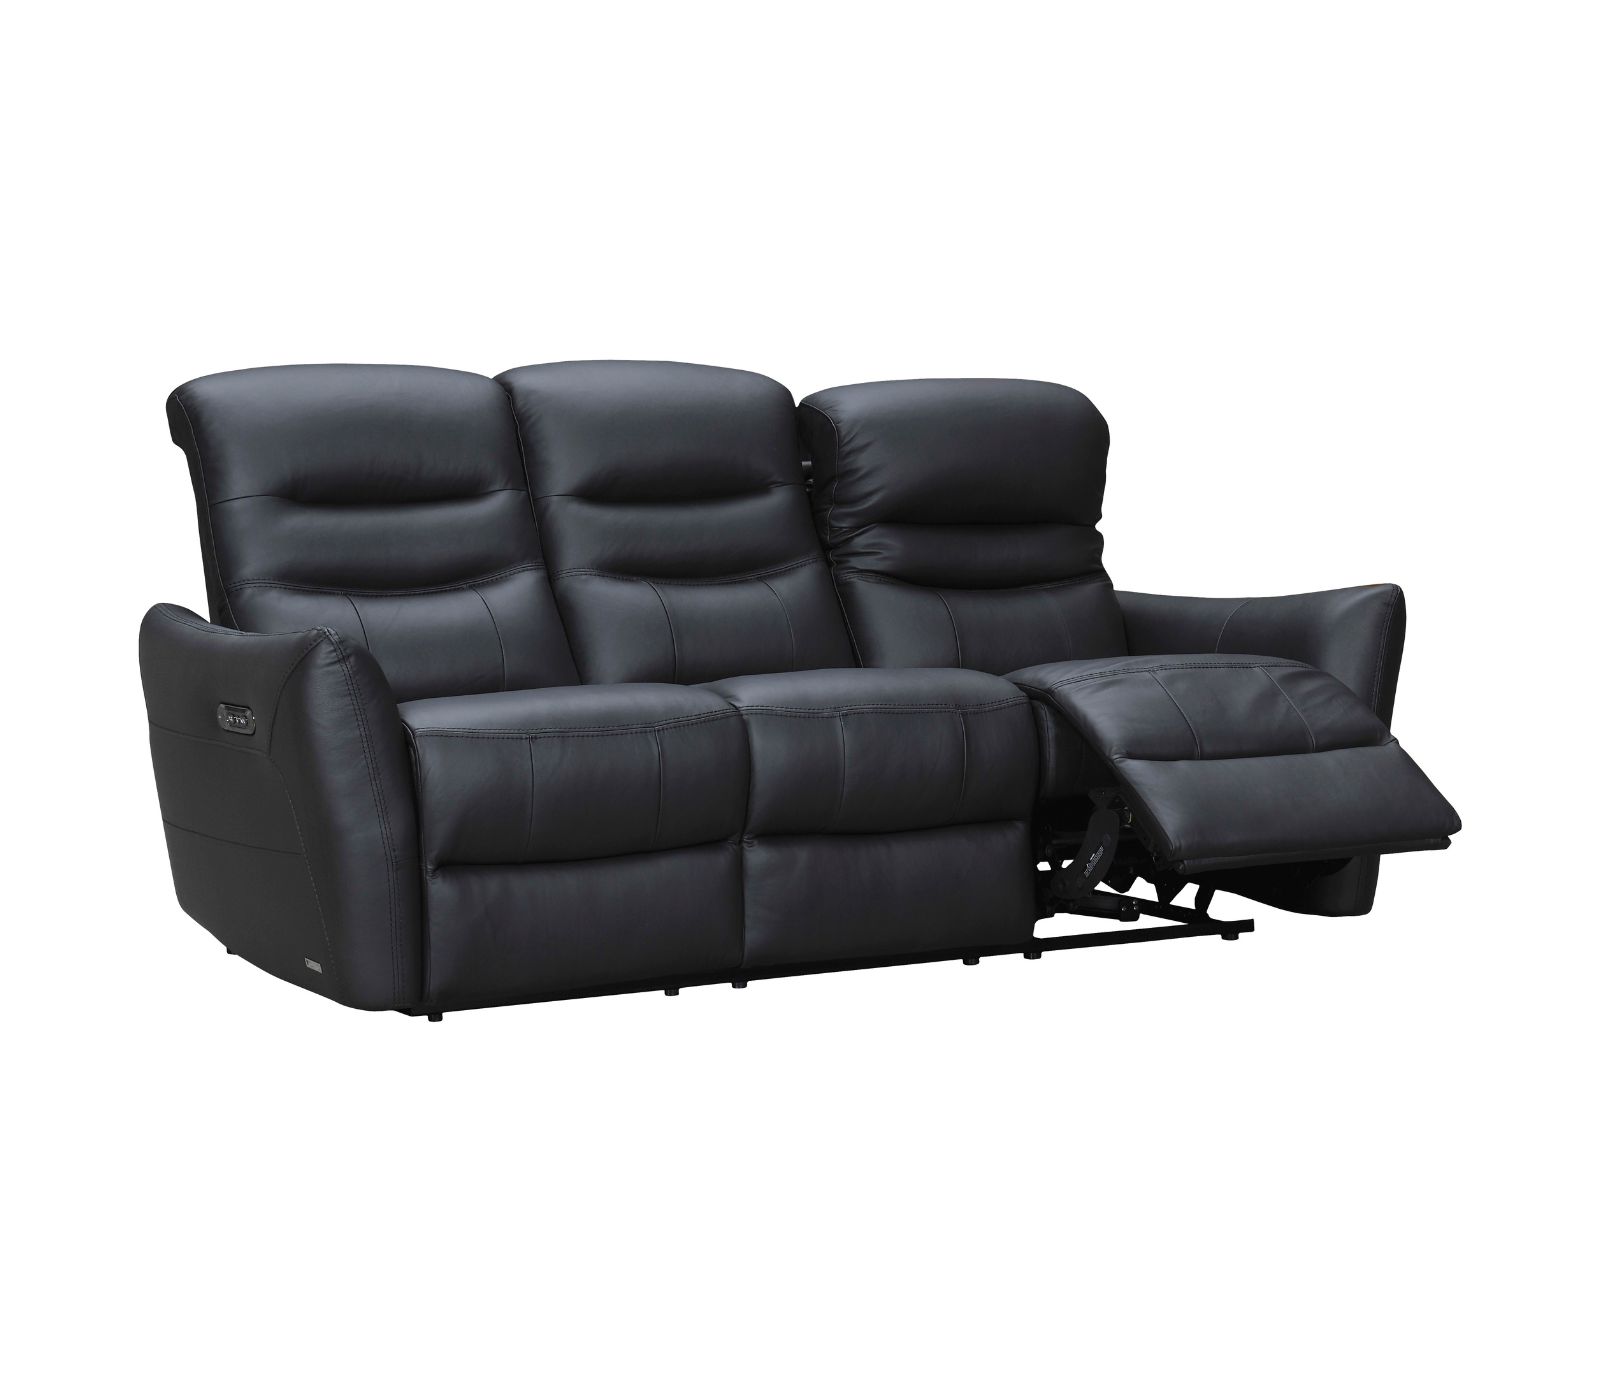 Zeus Sofa - Power Reclining w/ Power Headrests - Black Leather